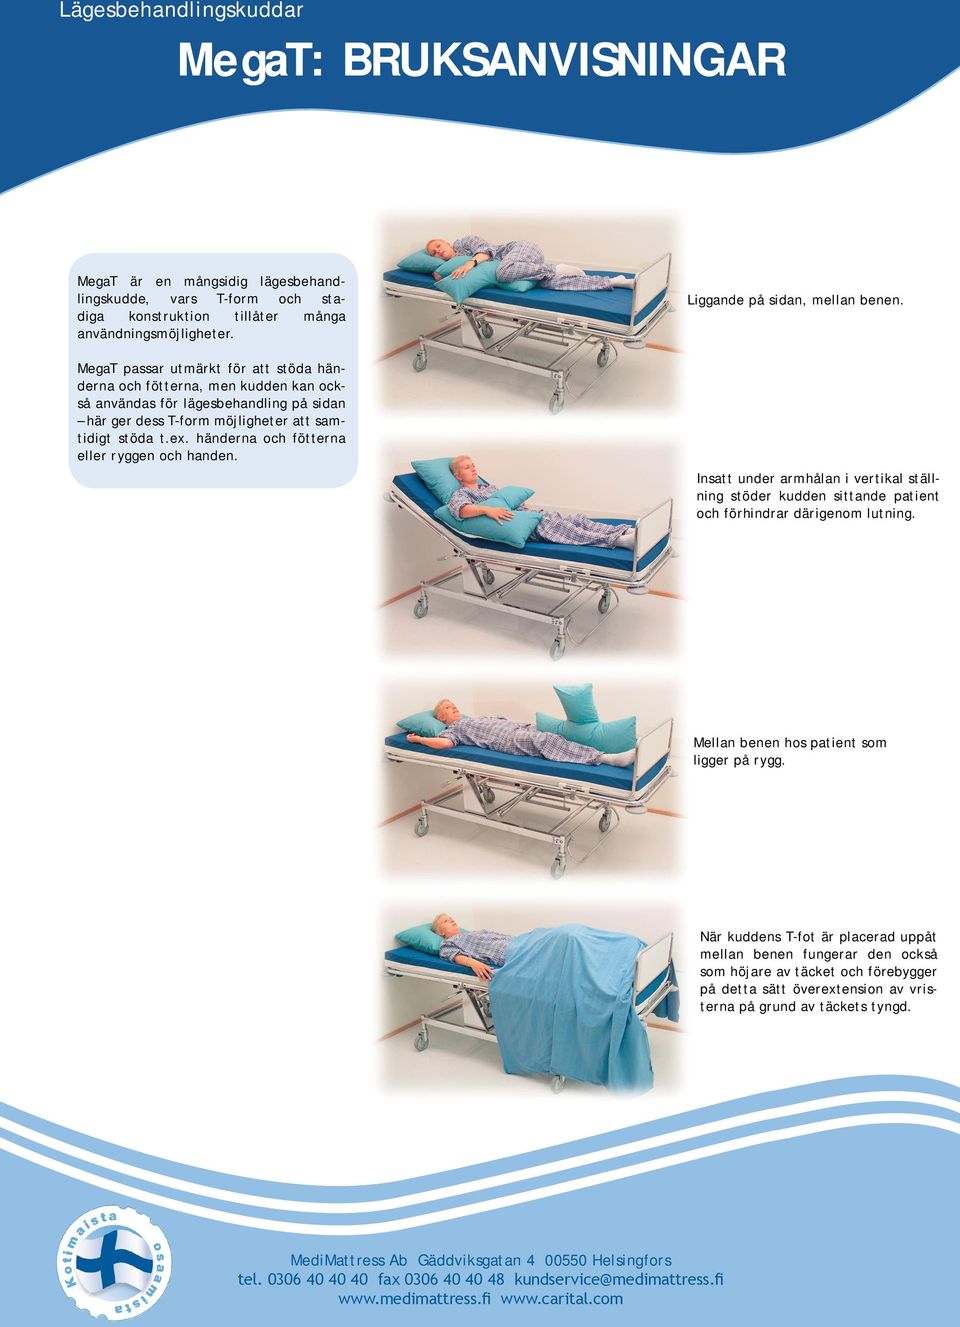 händerna och fötterna eller ryggen och handen. Insatt under armhålan i vertikal ställning stöder kudden sittande patient och förhindrar därigenom lutning. Mellan benen hos patient som ligger på rygg.